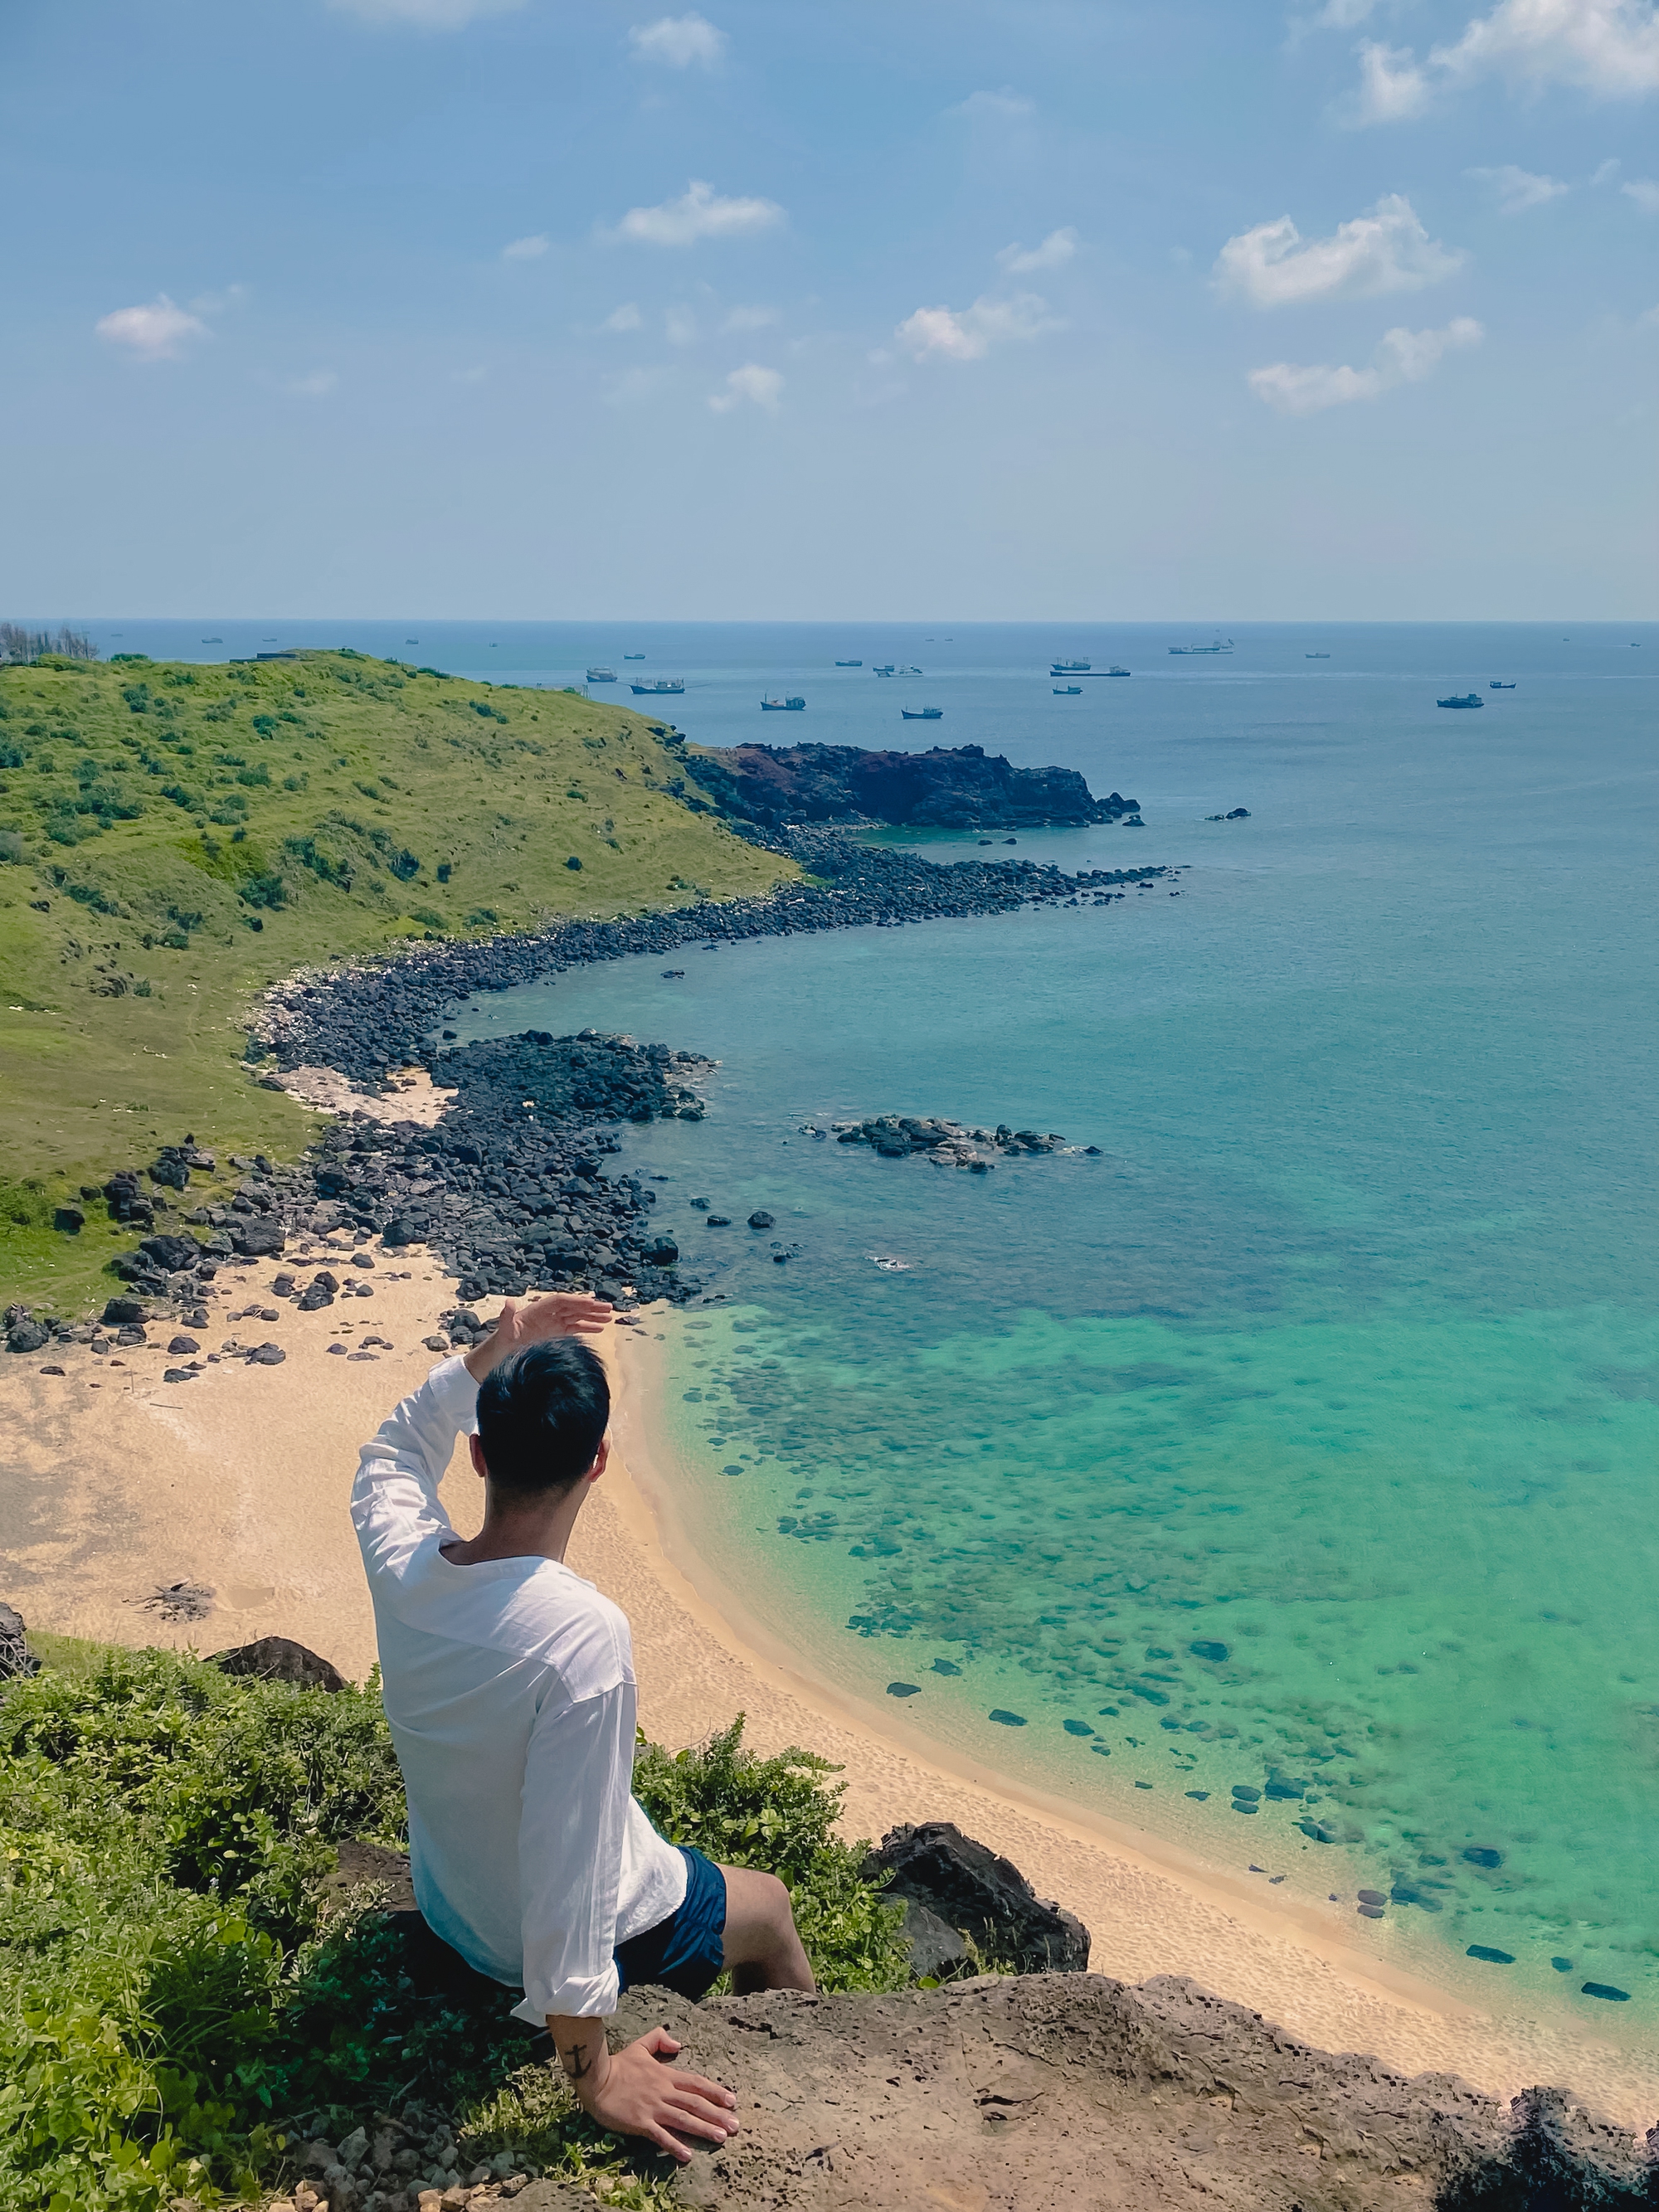 (mai) Lần đầu đi đảo Phú Quý sau dịch, cô gái Hà Nội được cầu hôn đúng khoảnh khắc hoàng hôn ở vịnh Triều Dương - Ảnh 6.